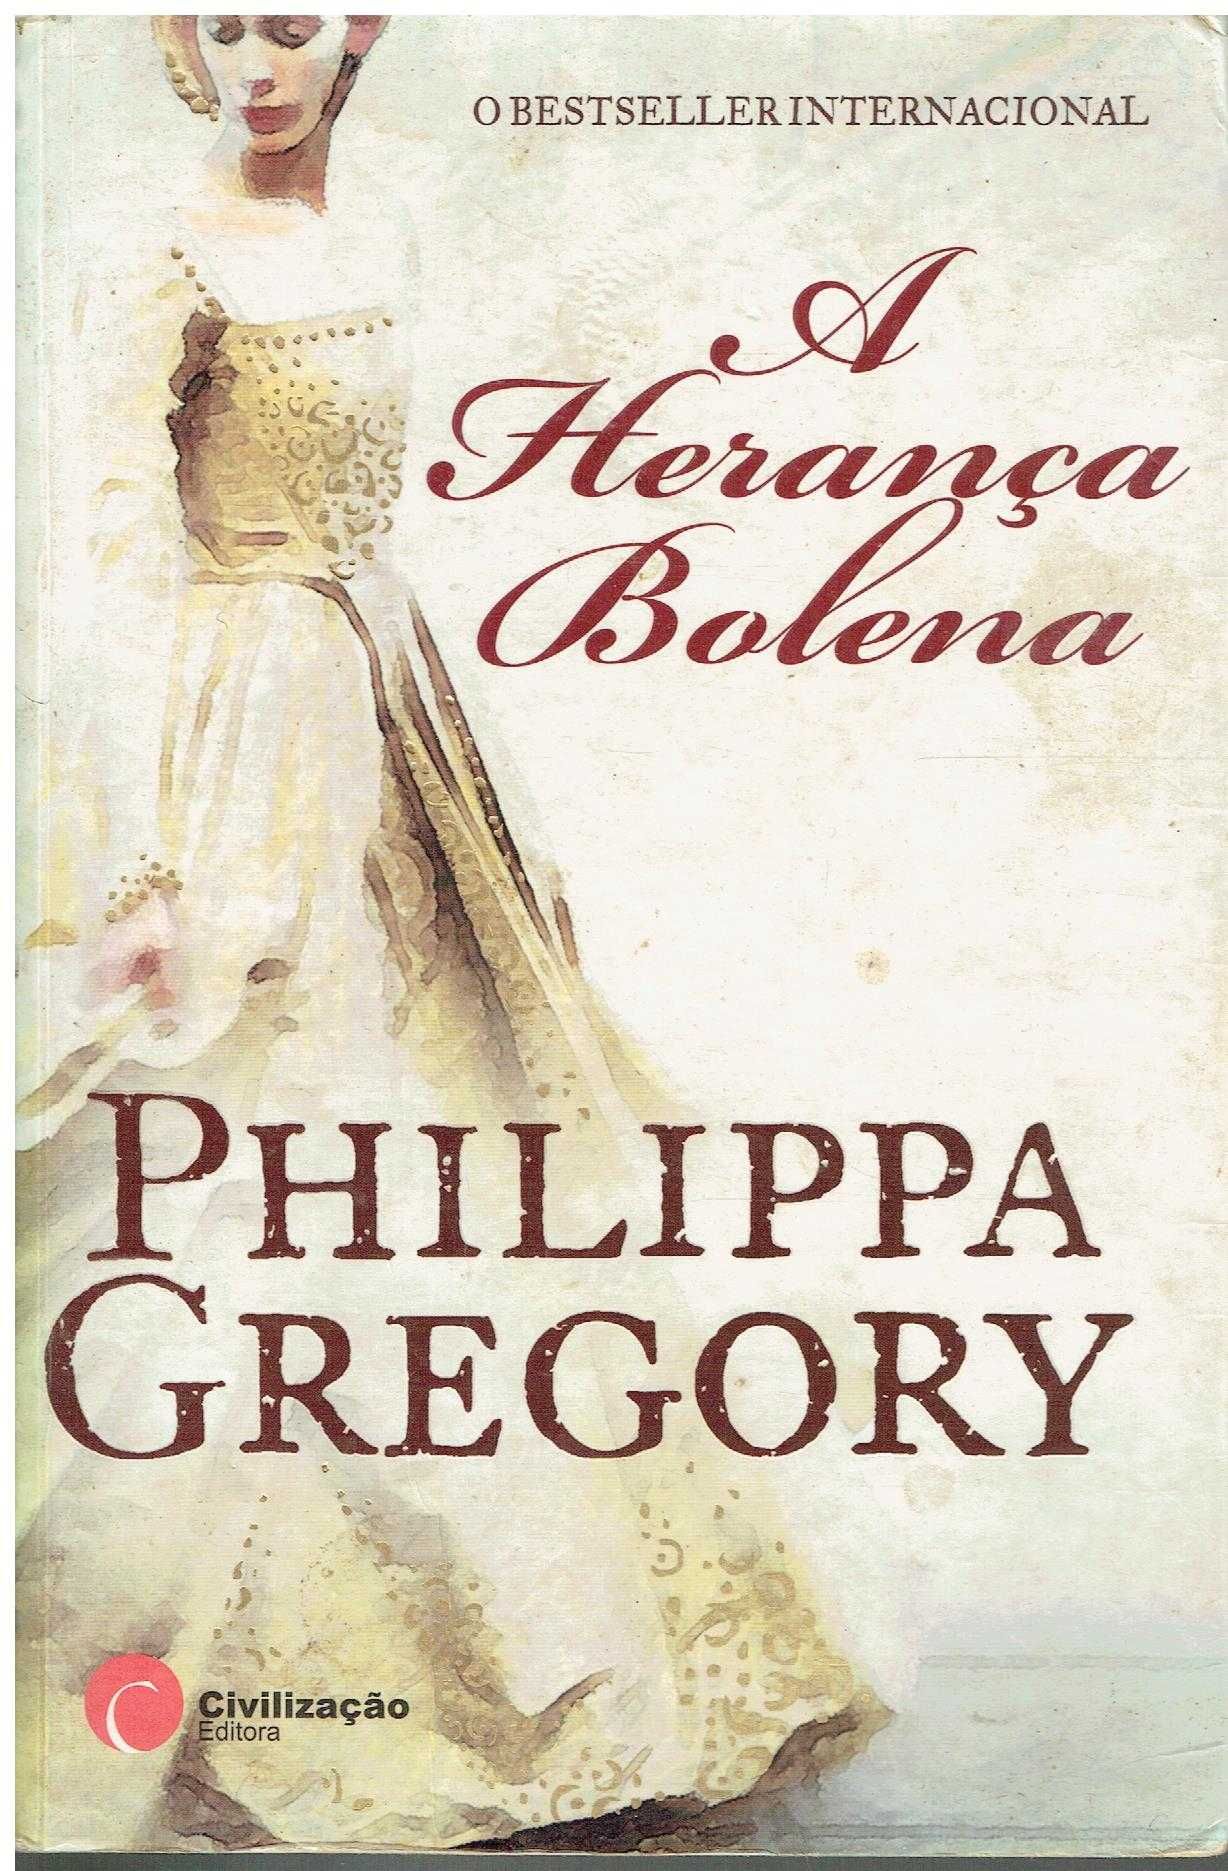 13740

Livros de Philippa Gregory